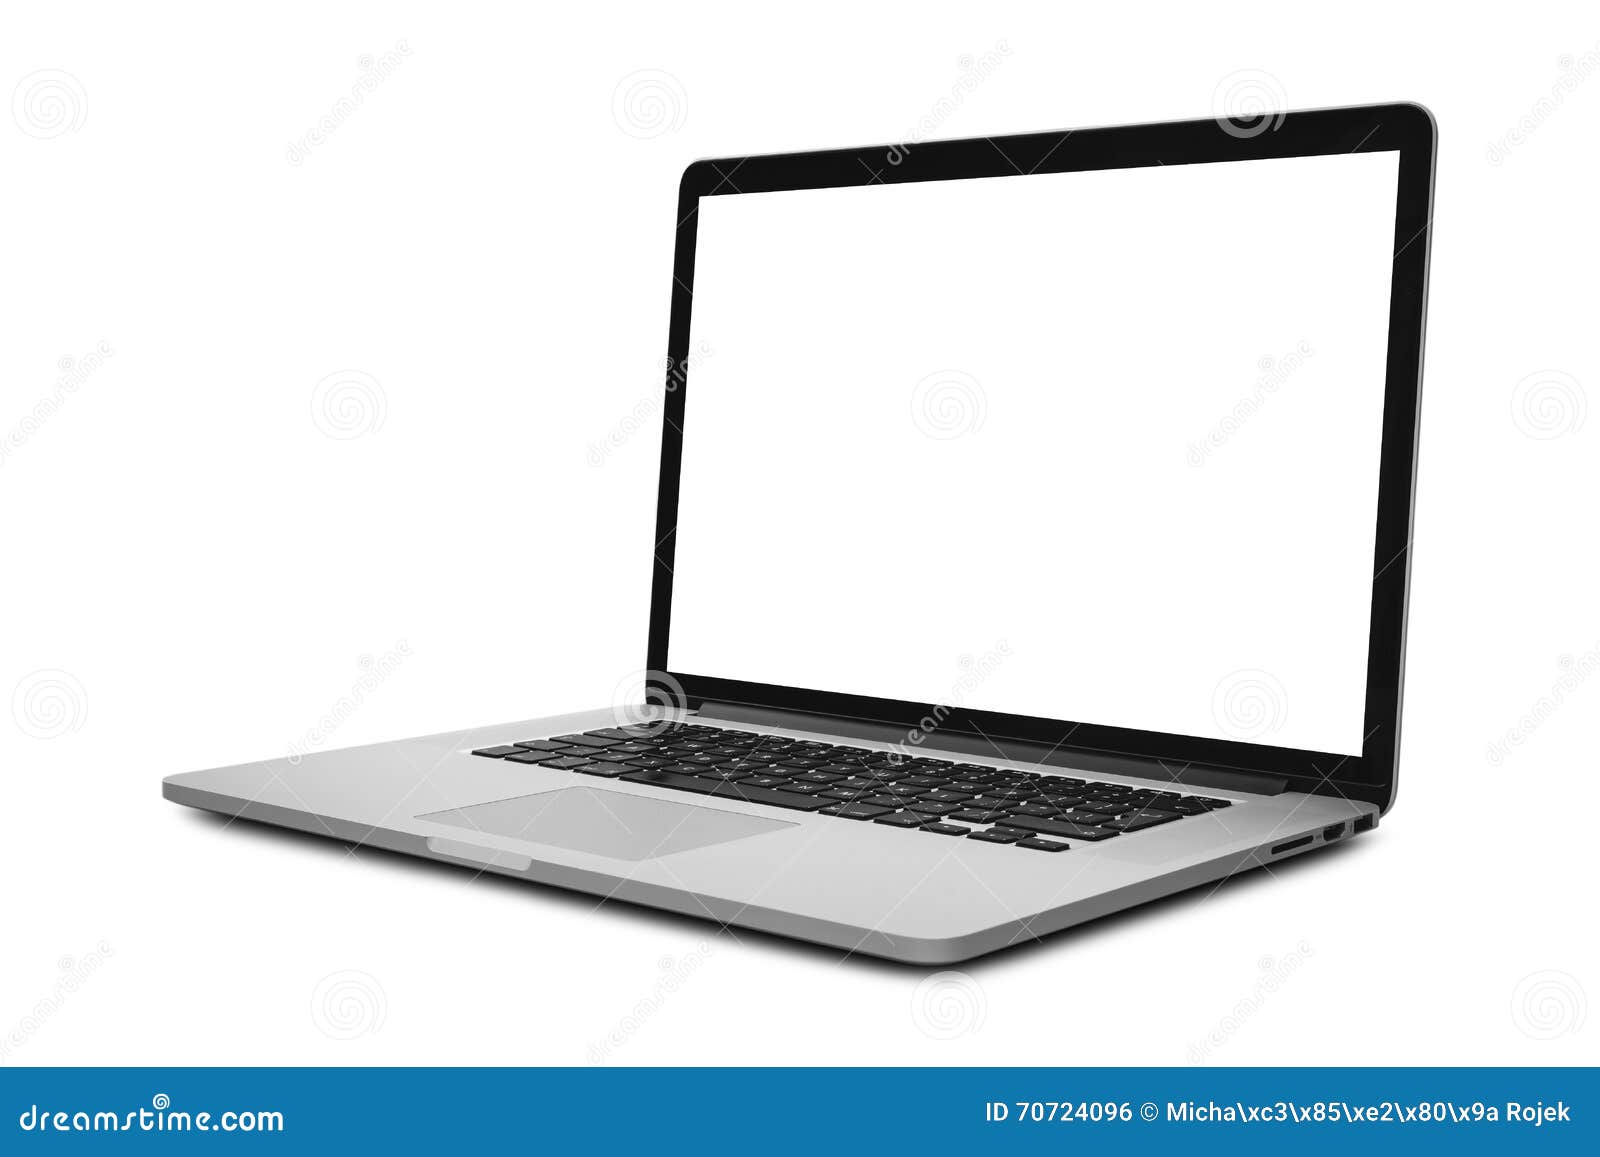 Laptop mit dem leeren Bildschirm in winkliger Position lokalisiert auf weißem Hintergrund